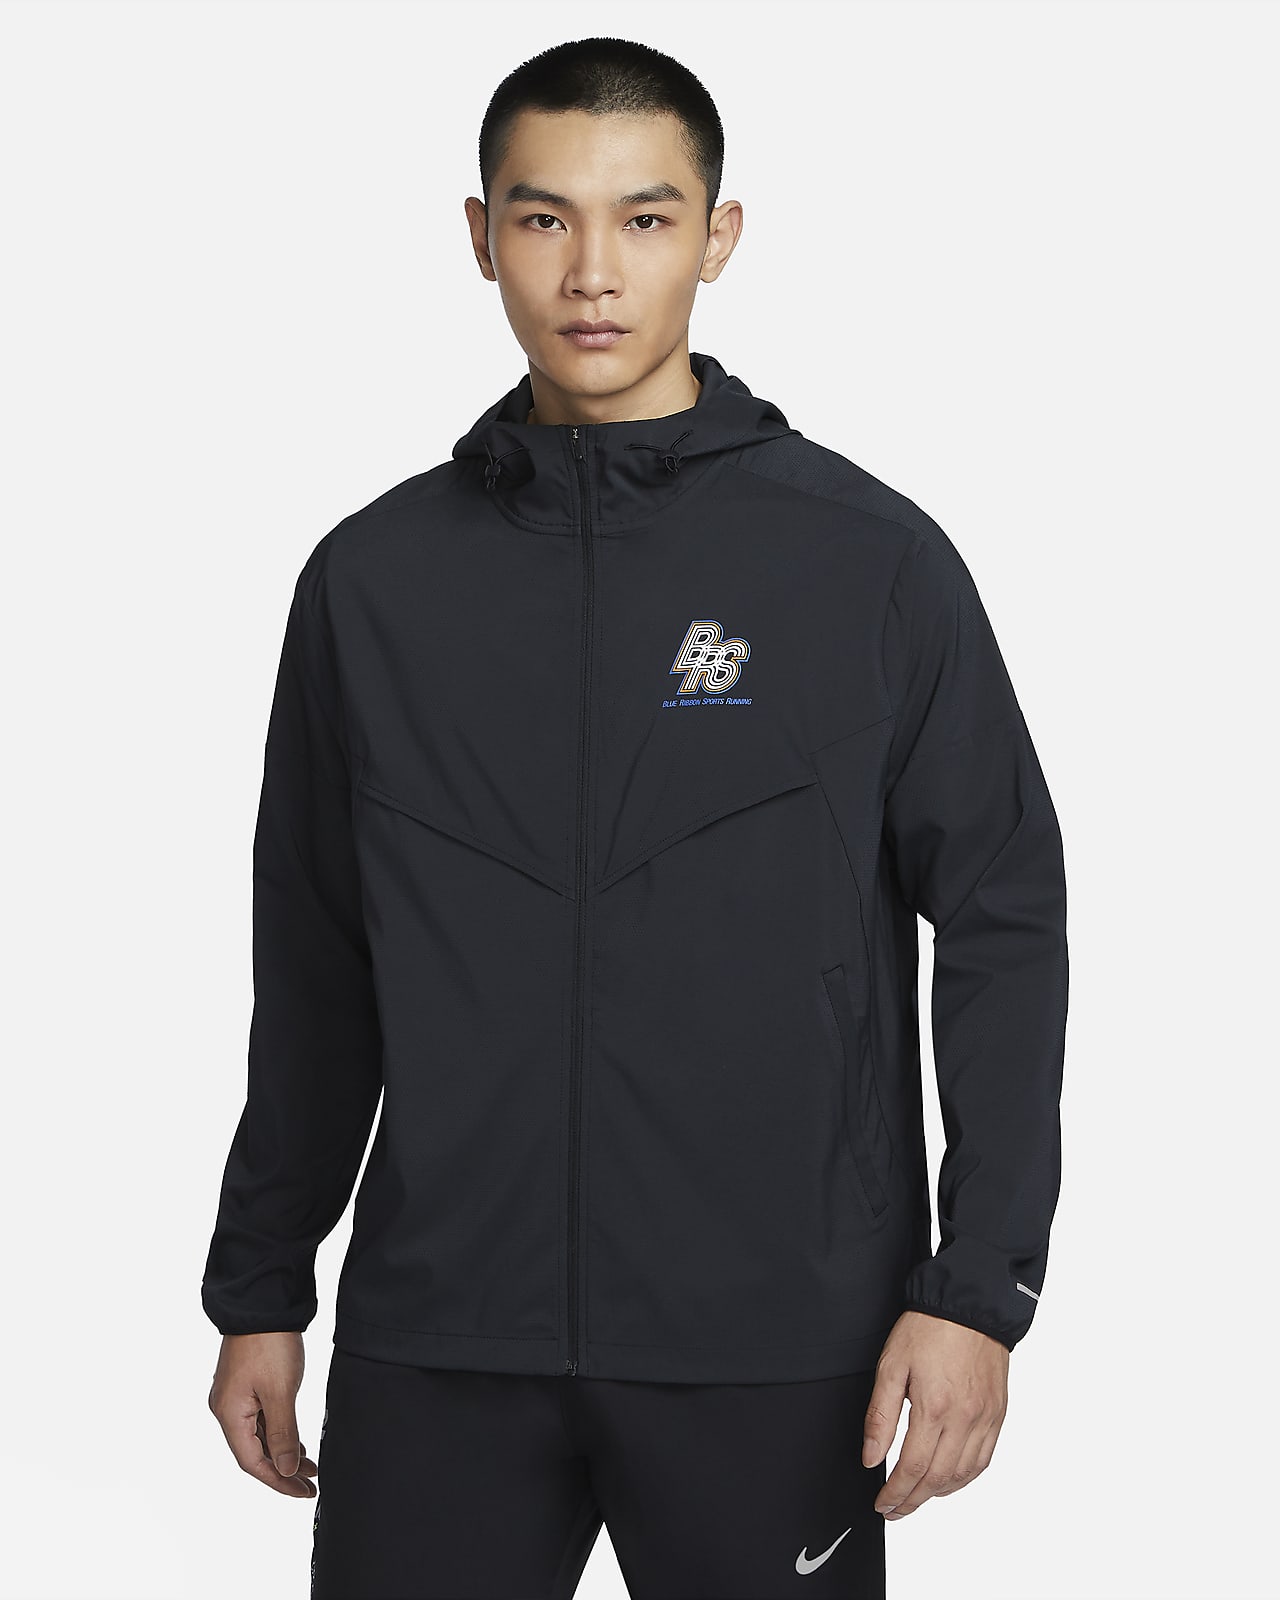 Nike Tech Aeroshield Windrunner Jacket in Black for Men